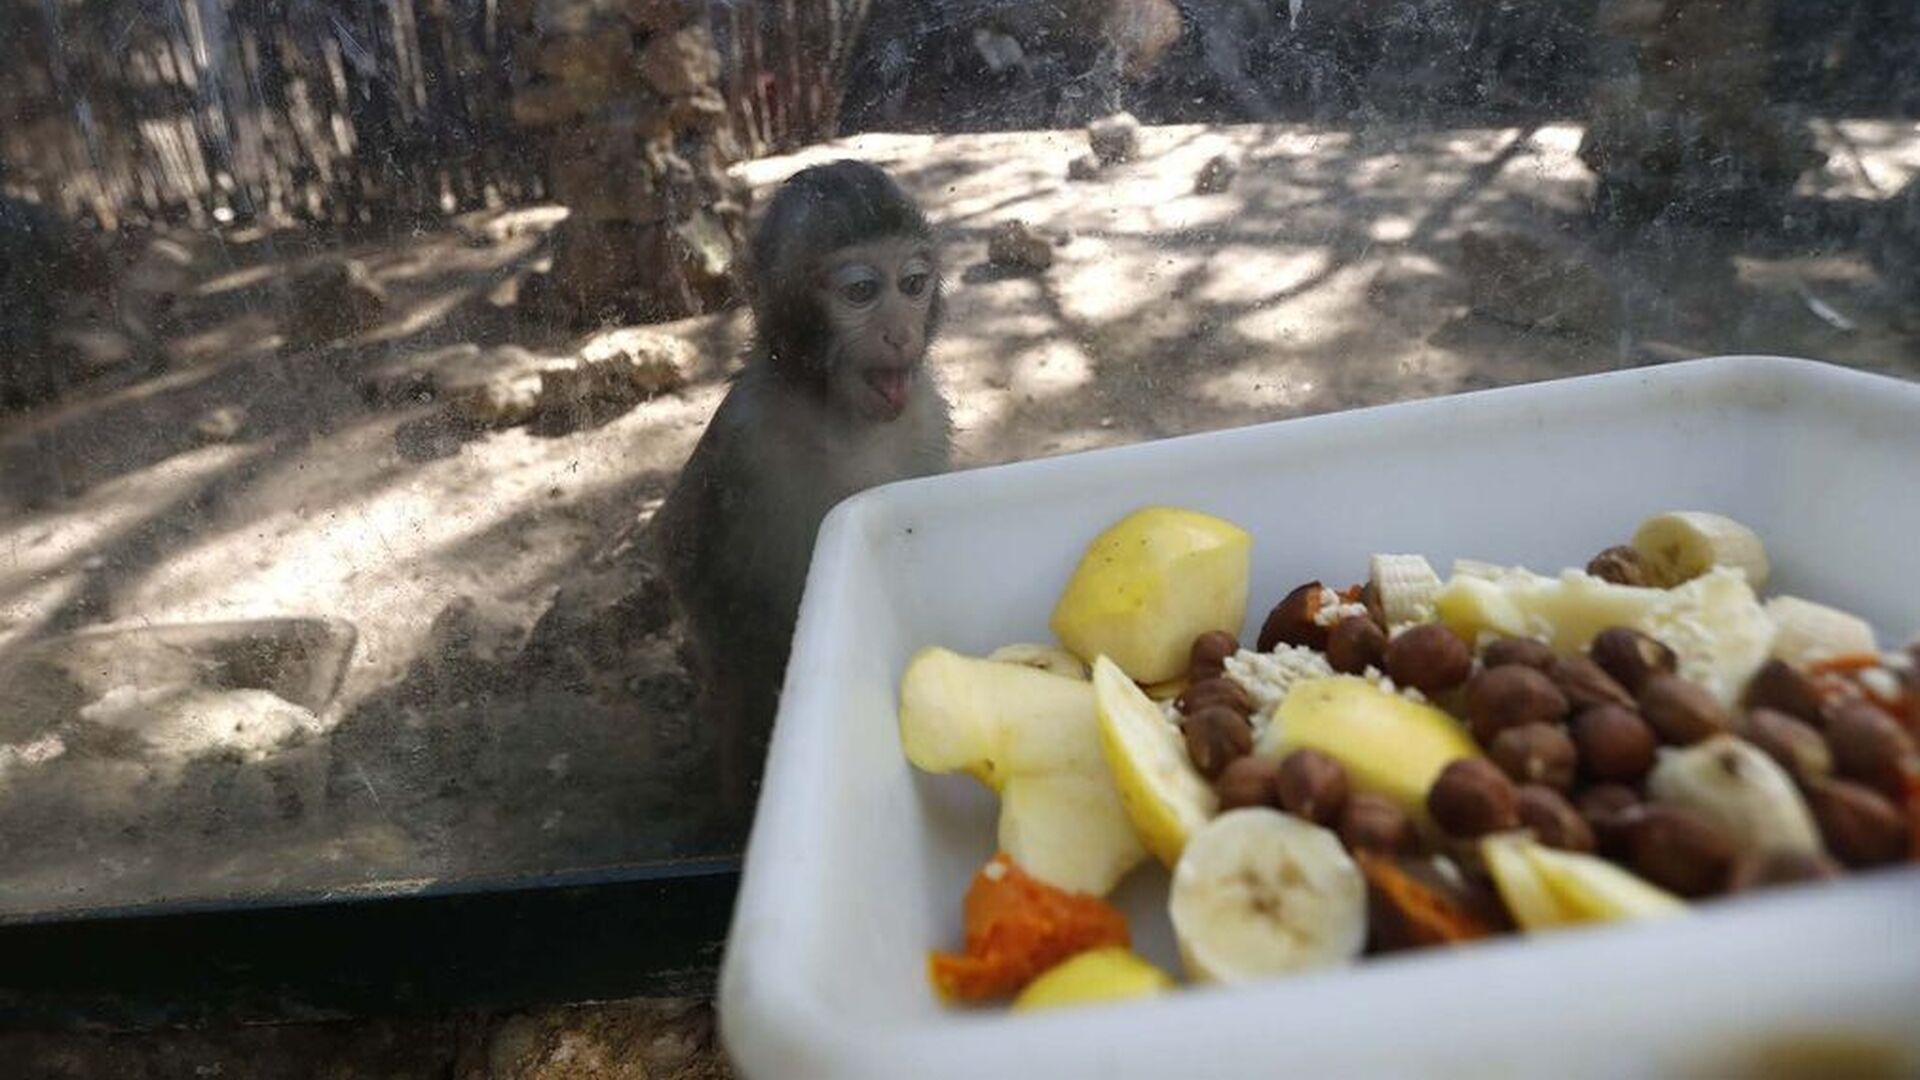 El Zoo de Castellar pide ayuda para alimentar a los animales al quedarse sin ingresos por culpa del coronavirus. Un mono observa una bandeja de comida desde su jaula en las instalaciones del centro.